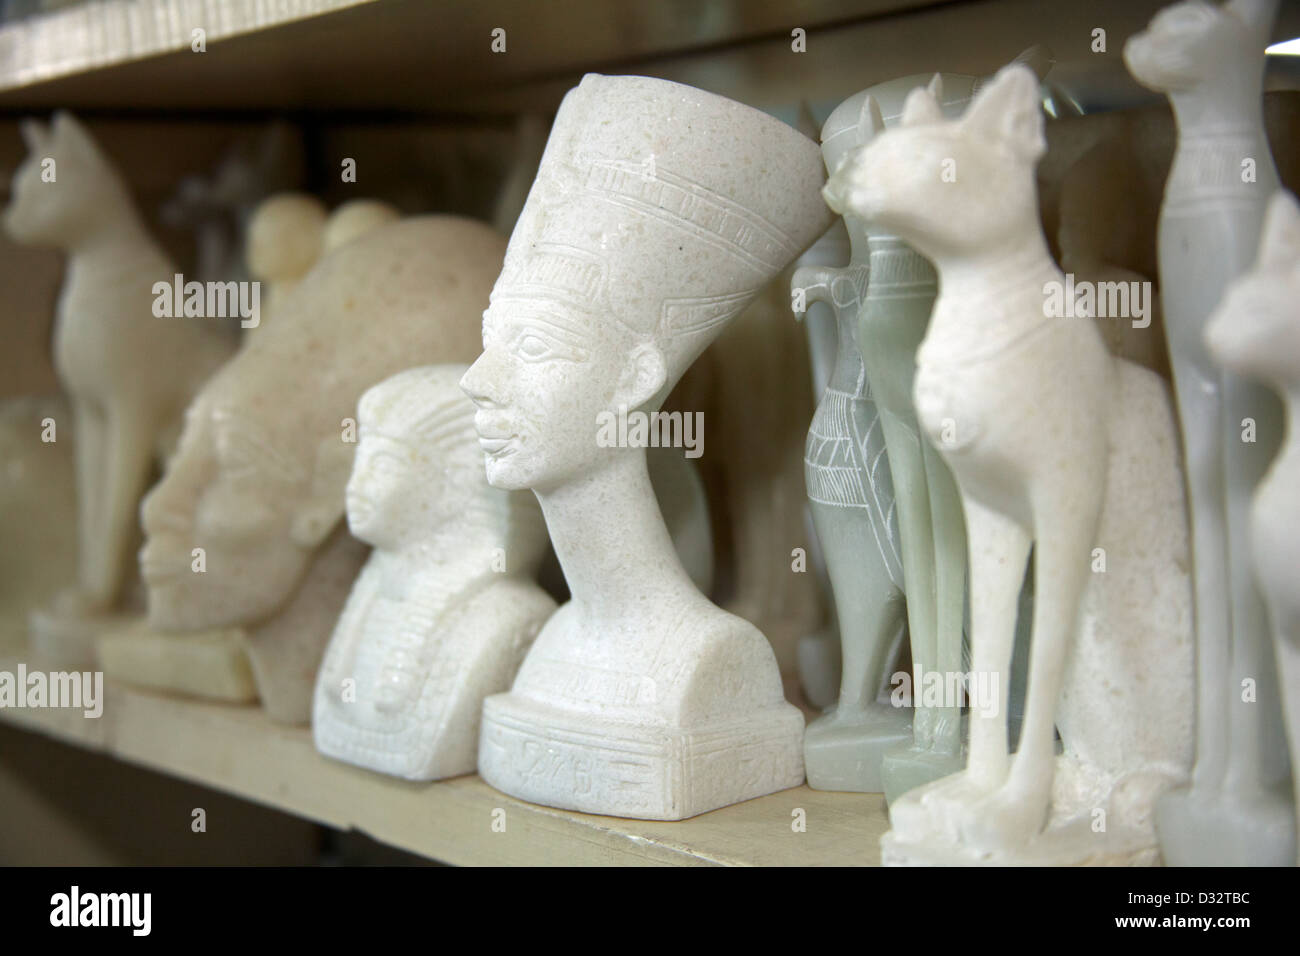 Stone carving negozio di souvenir dei faraoni, gatti, scarabei e gli dèi sulla vendita in un turista regali a Luxor Eqypt Foto Stock